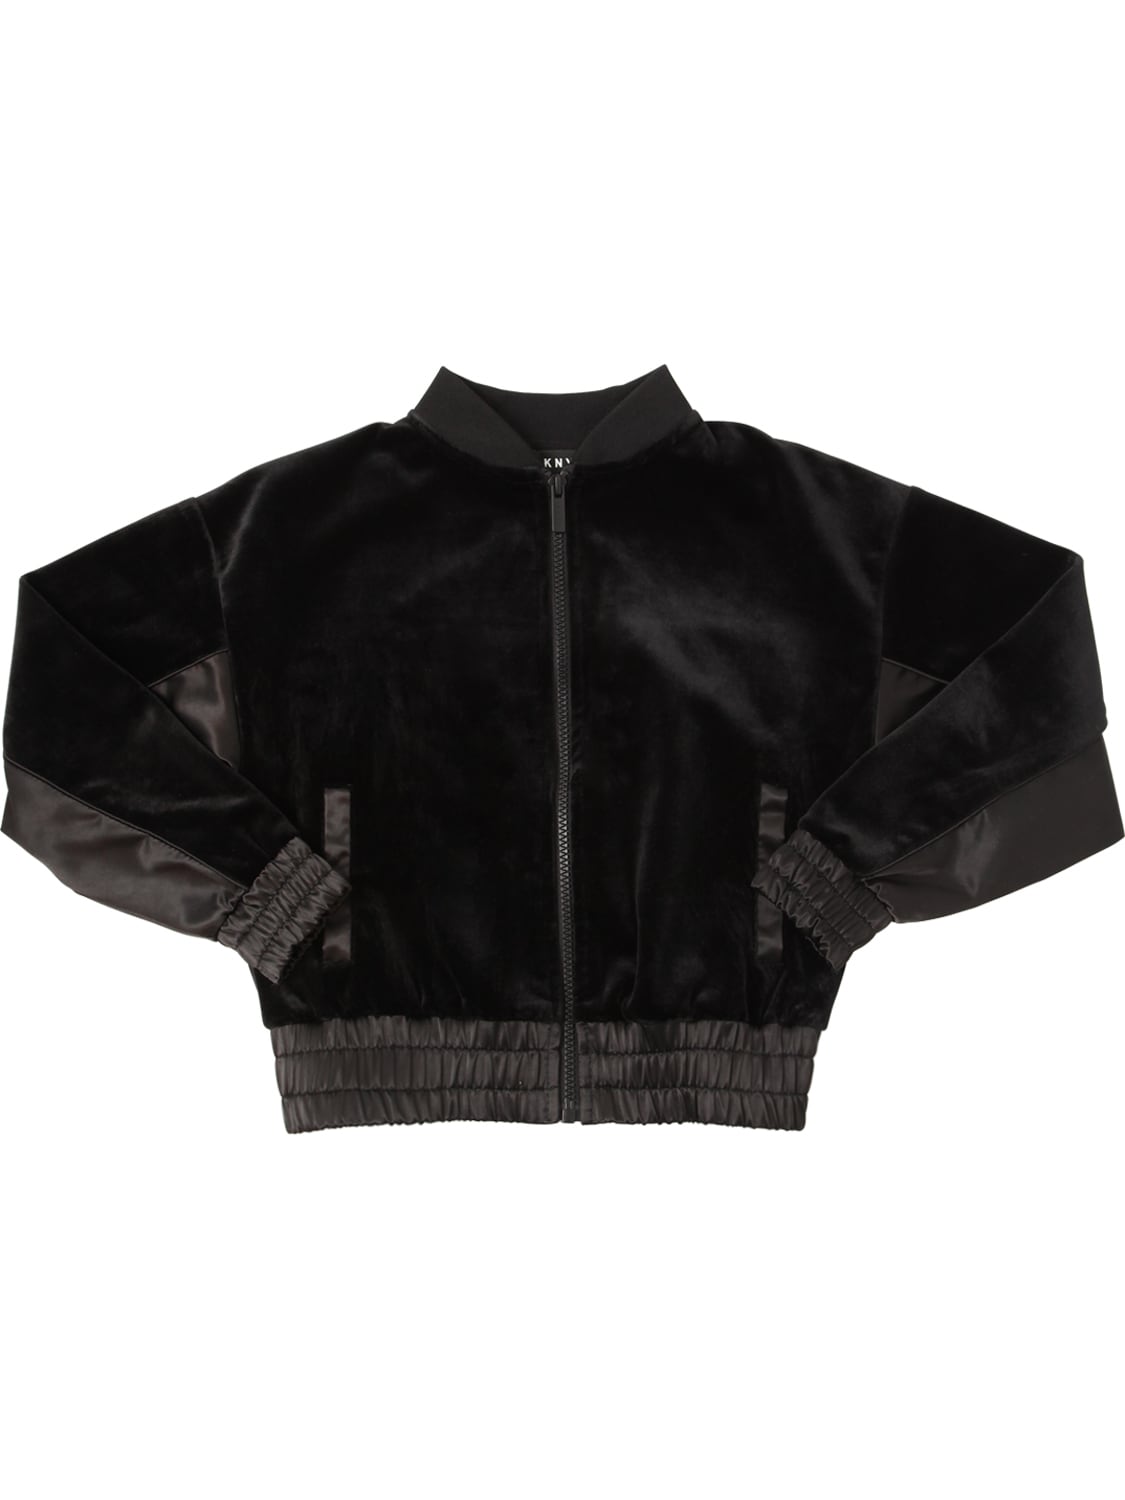 Dkny Kids' Velvet Sweatshirt W/ Nylon Detail In Black